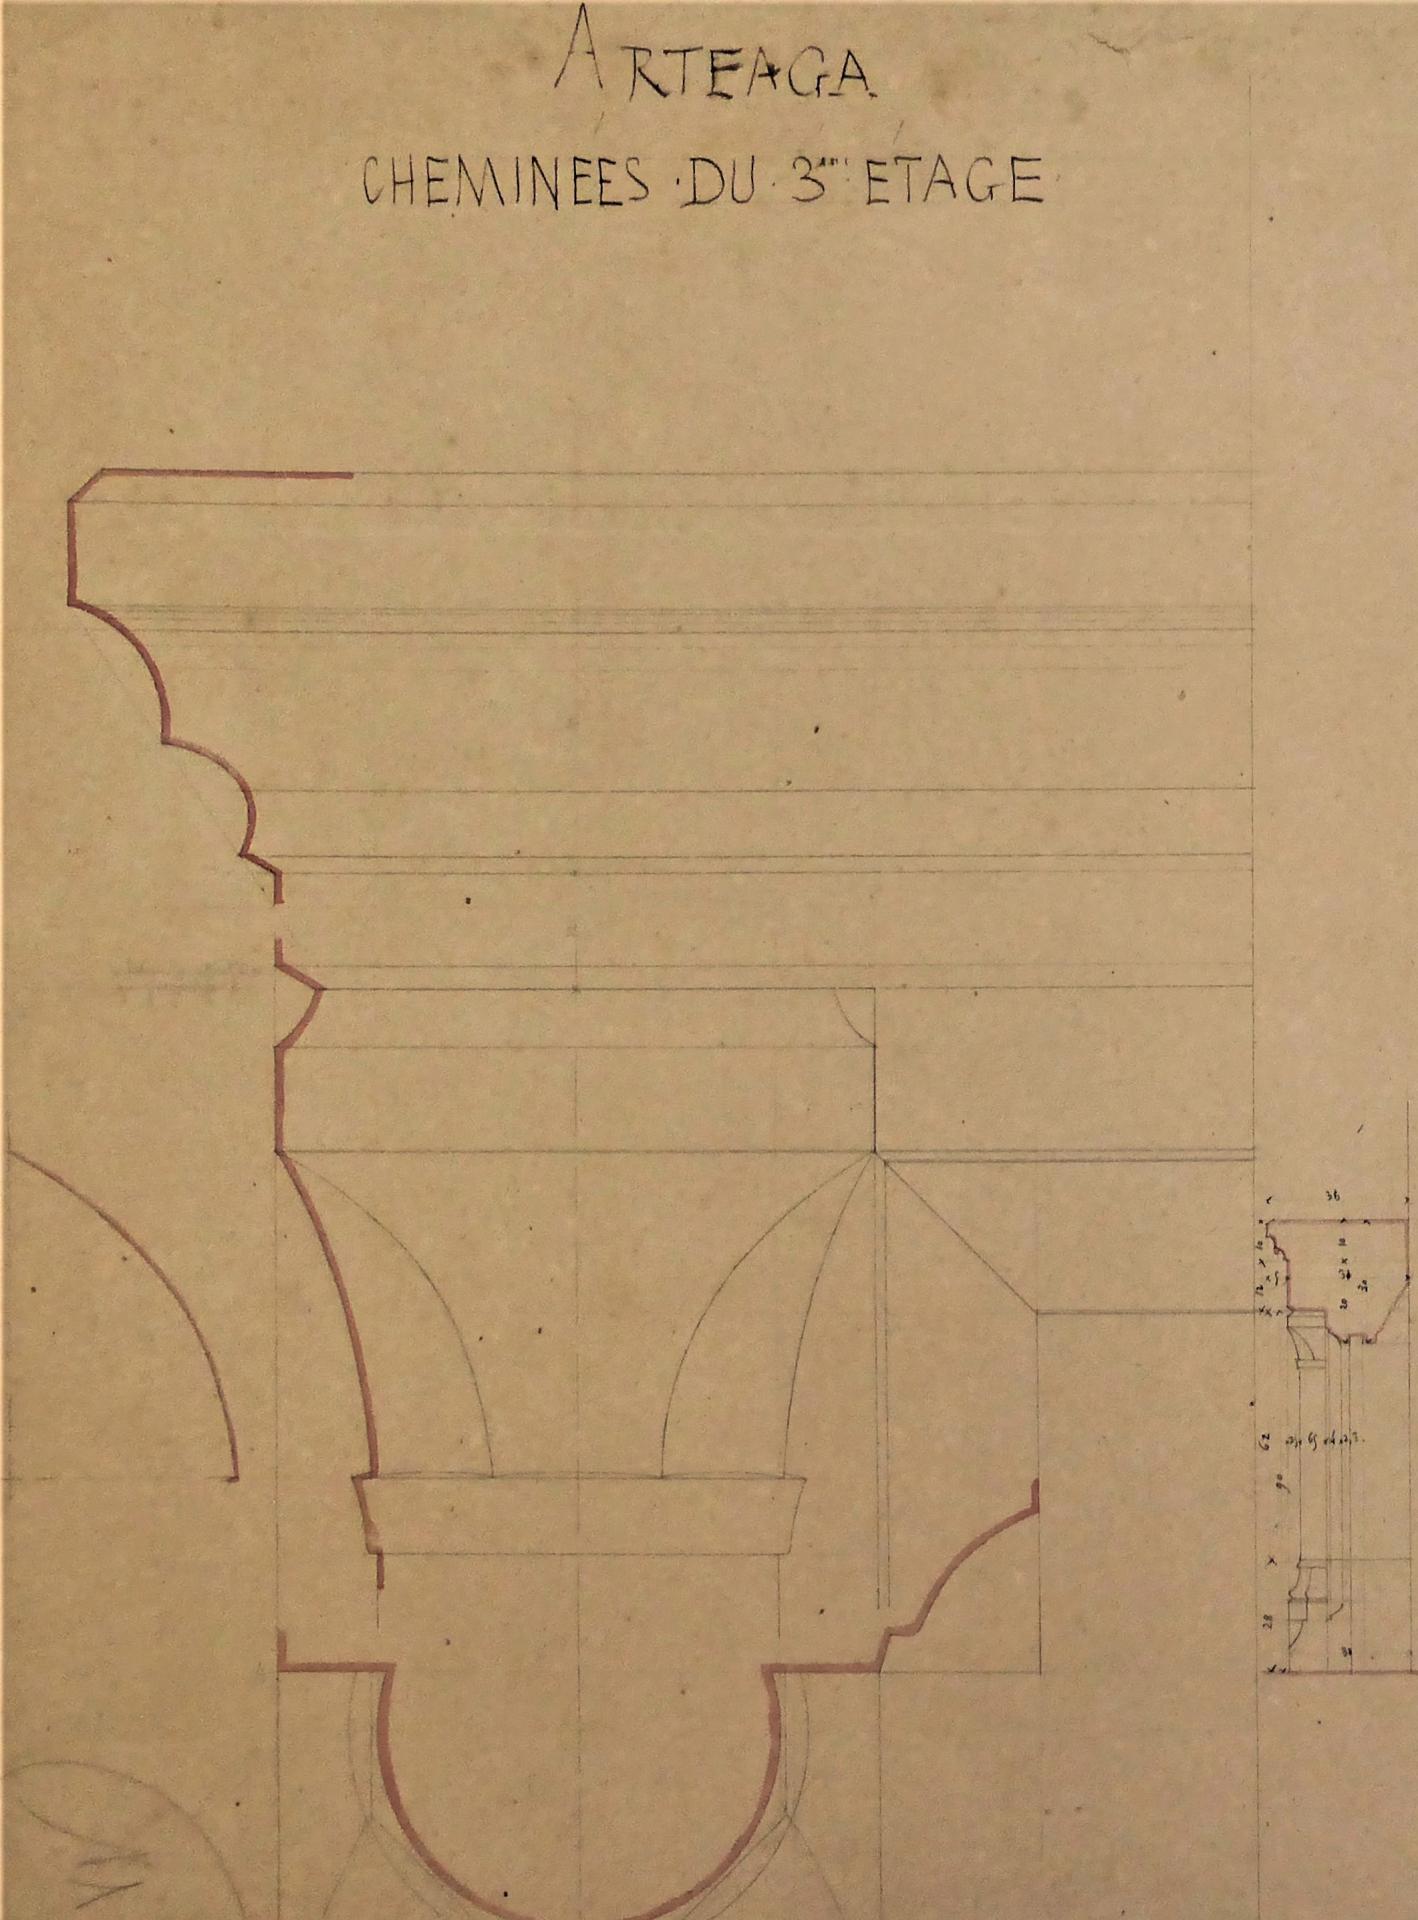 Arteaga, cheminée du 3e étage, détail, XIXe siècle, ©cl.Ph.Cachau